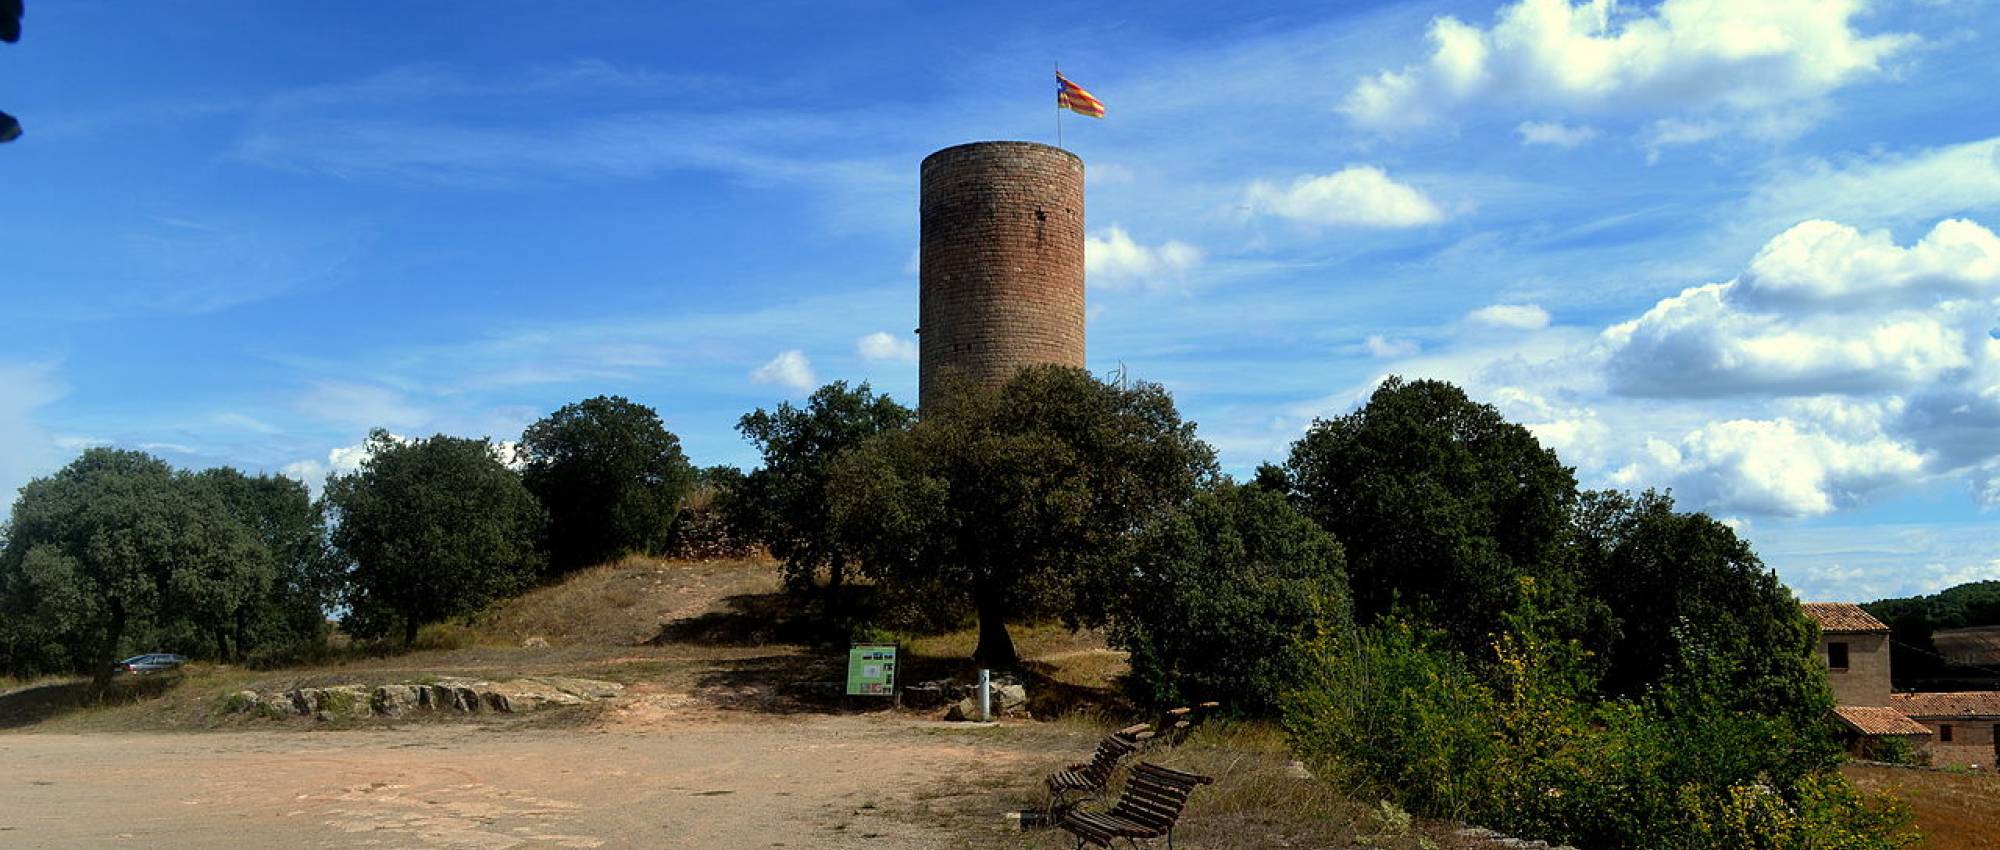 Vista general de la Torre de la Manresana. Angela Llop / Wikimedia Commons. CC BY-SA 2.0